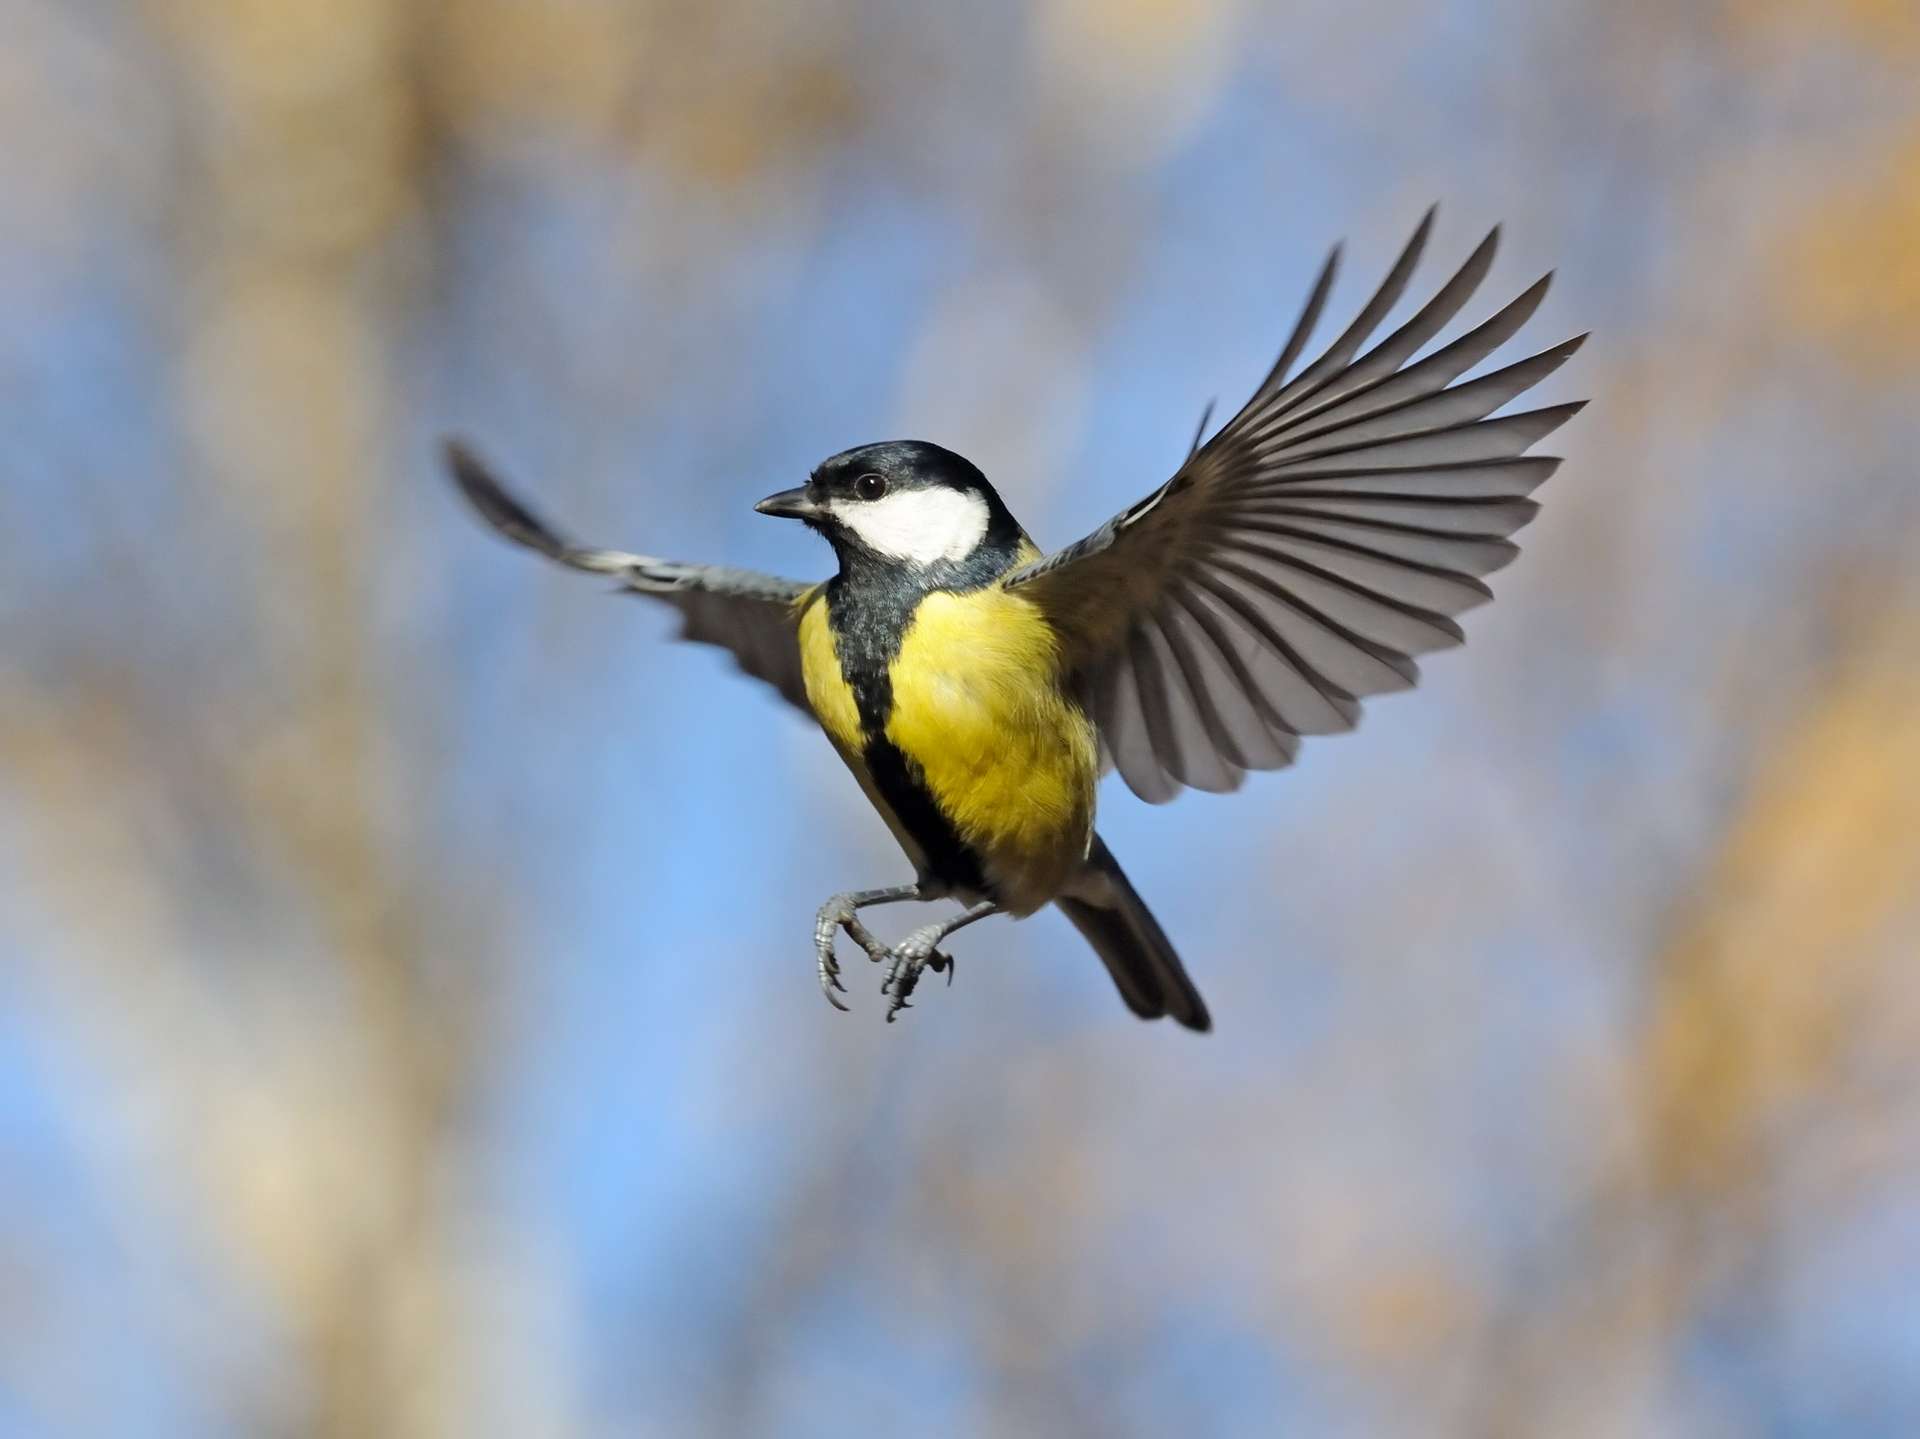 Les oiseaux ont des ailes de plus en plus grandes à cause du réchauffement climatique